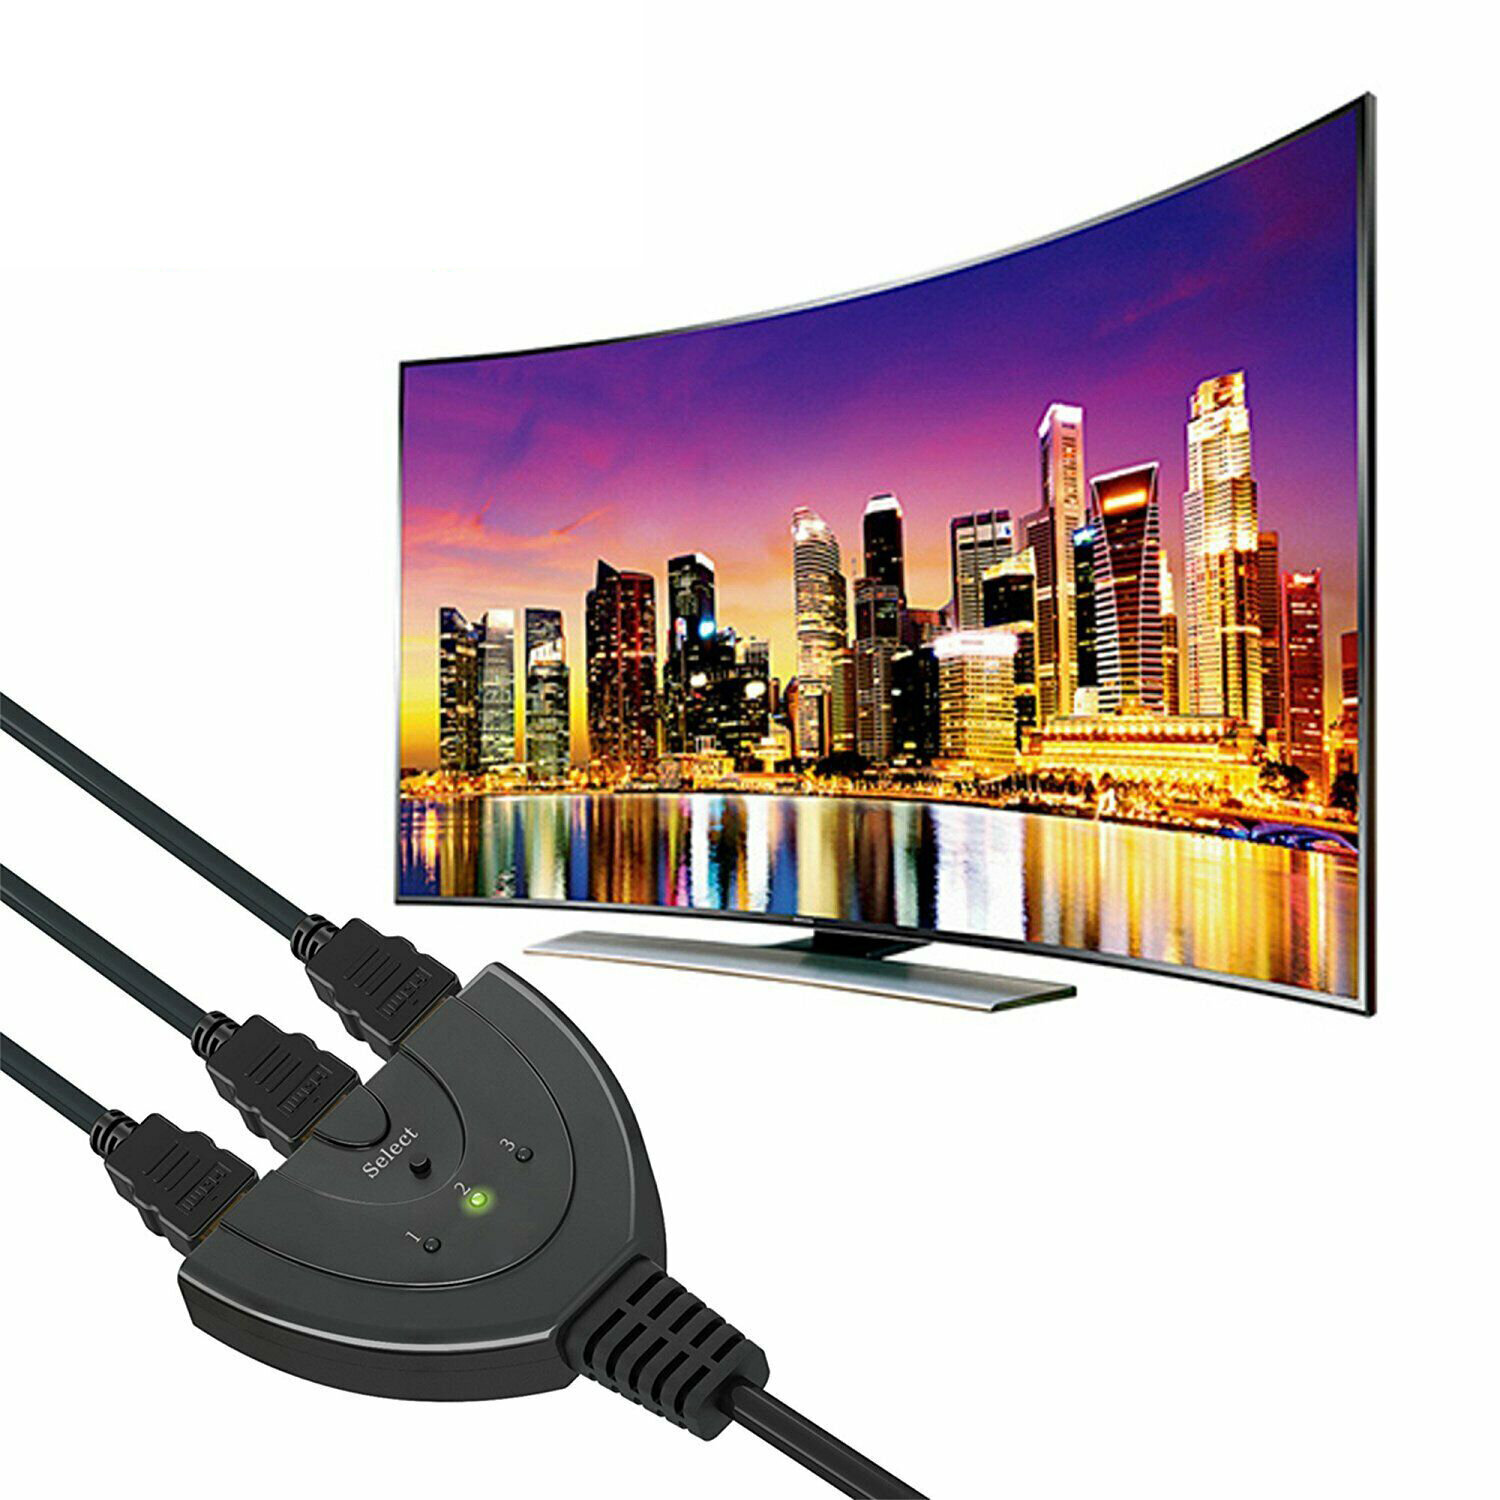 

3 Port HDMI Switch Adapter AV Switcher Selector Converter Splitter Hub Cable for HDTV 1080P Xbox